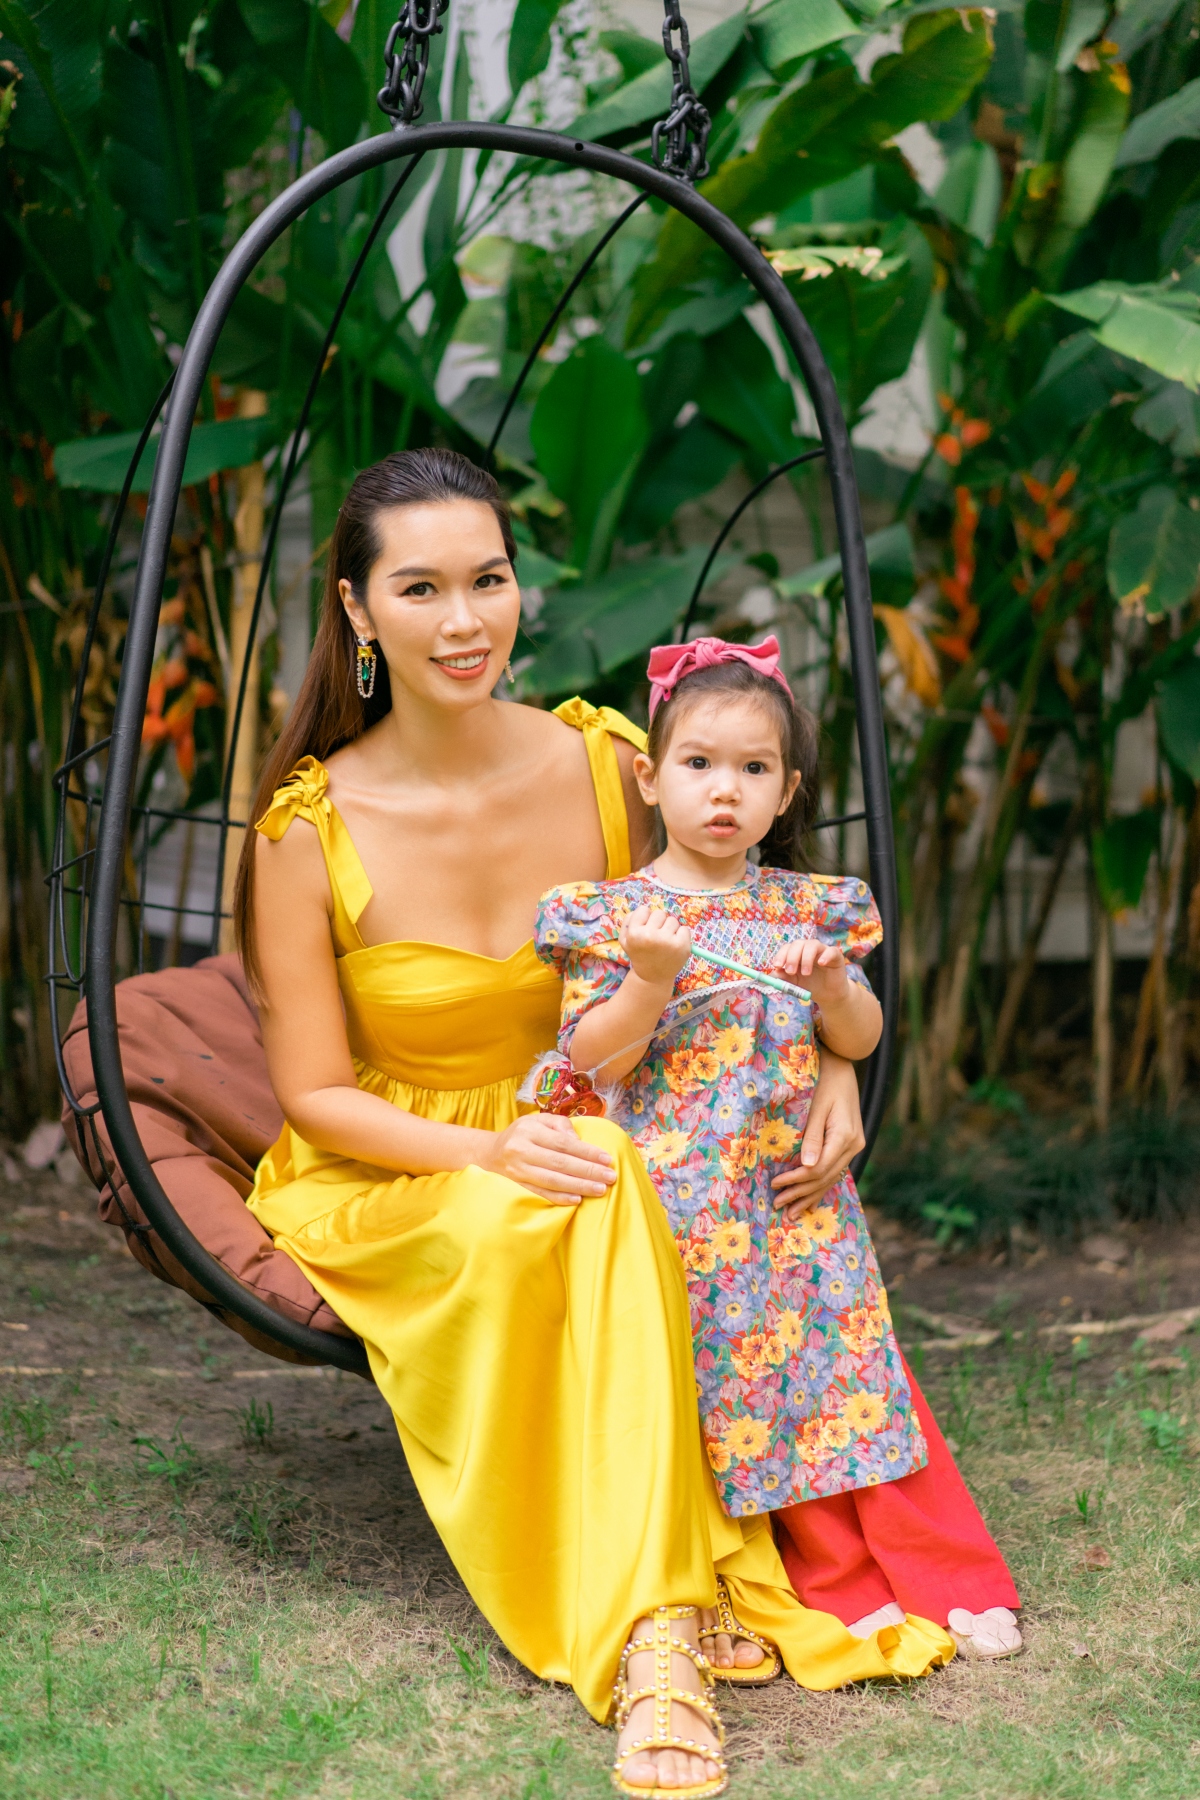 Con gái lai Tây của siêu mẫu Hà Anh đáng yêu khi mặc áo dài | VOV.VN